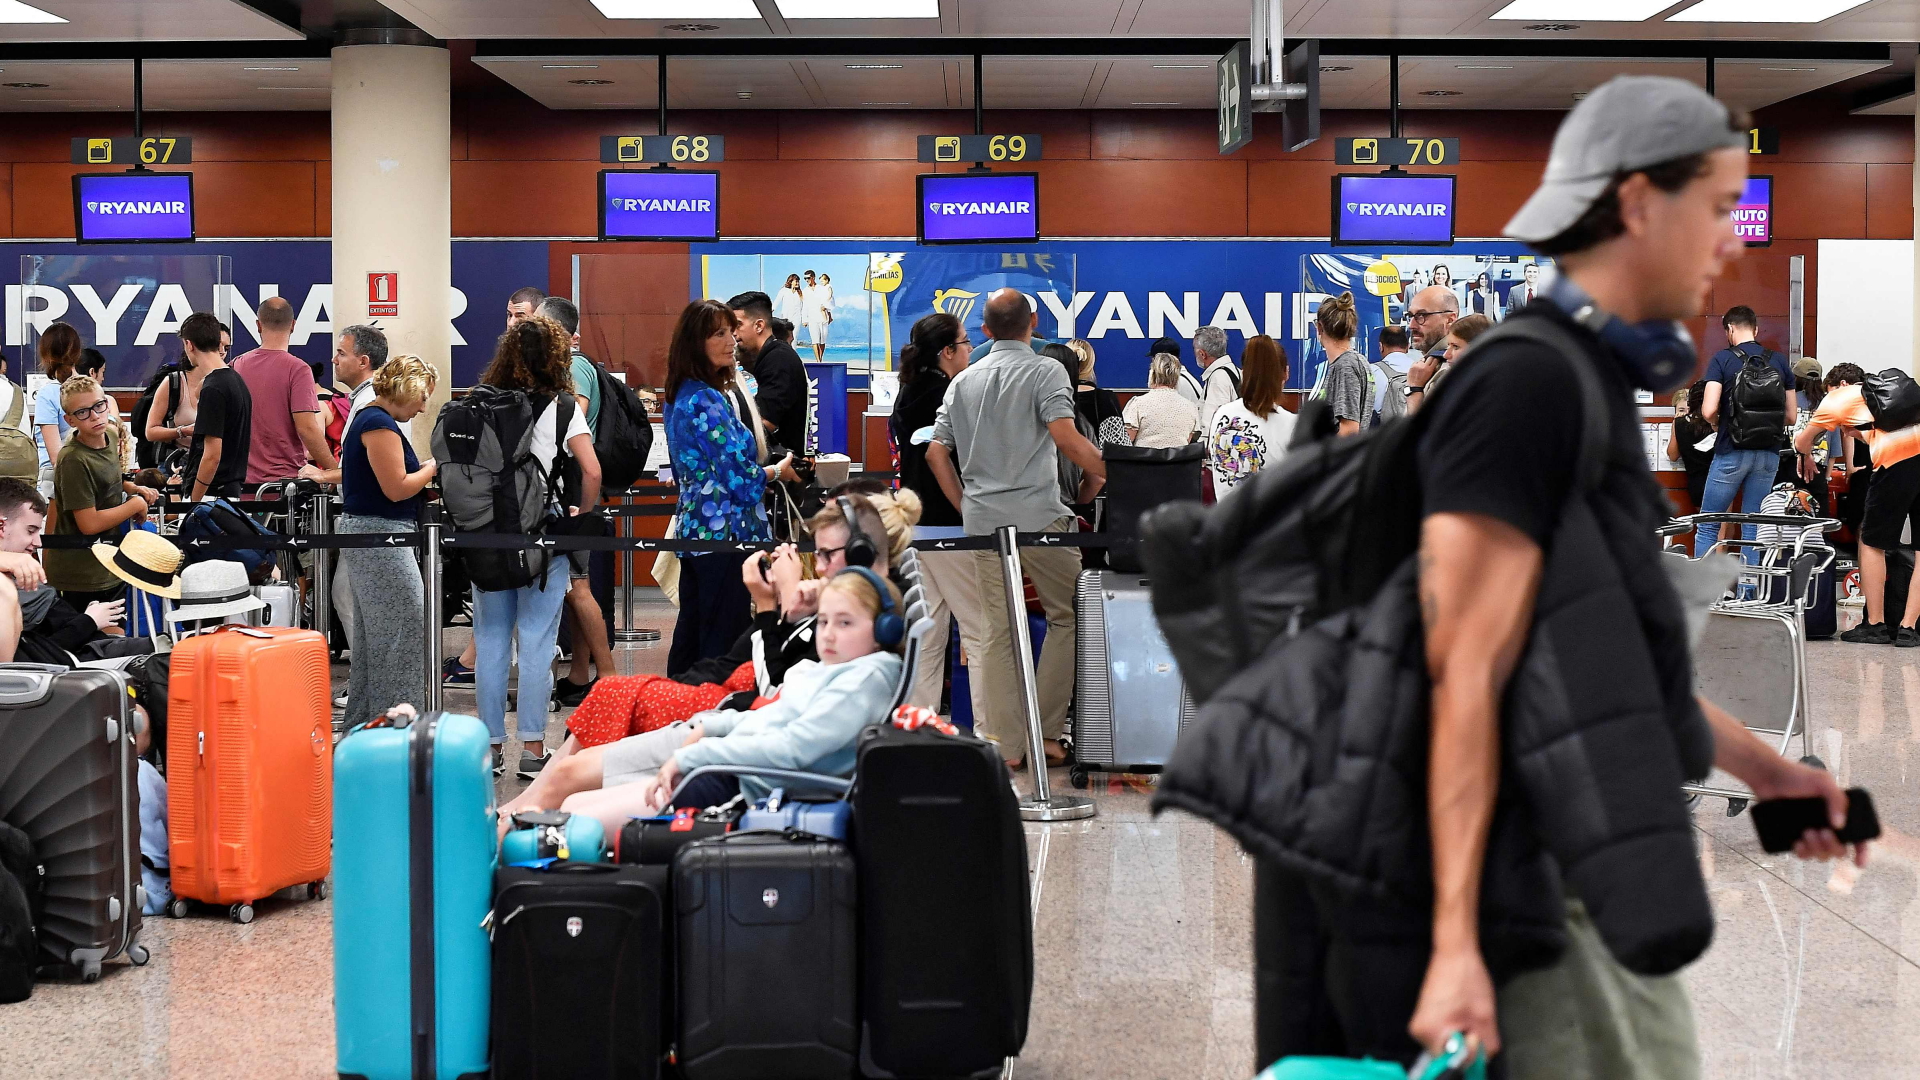 Passagiere stehen am Ryanair-Schalter auf dem Flughafen Barcelona. | AFP